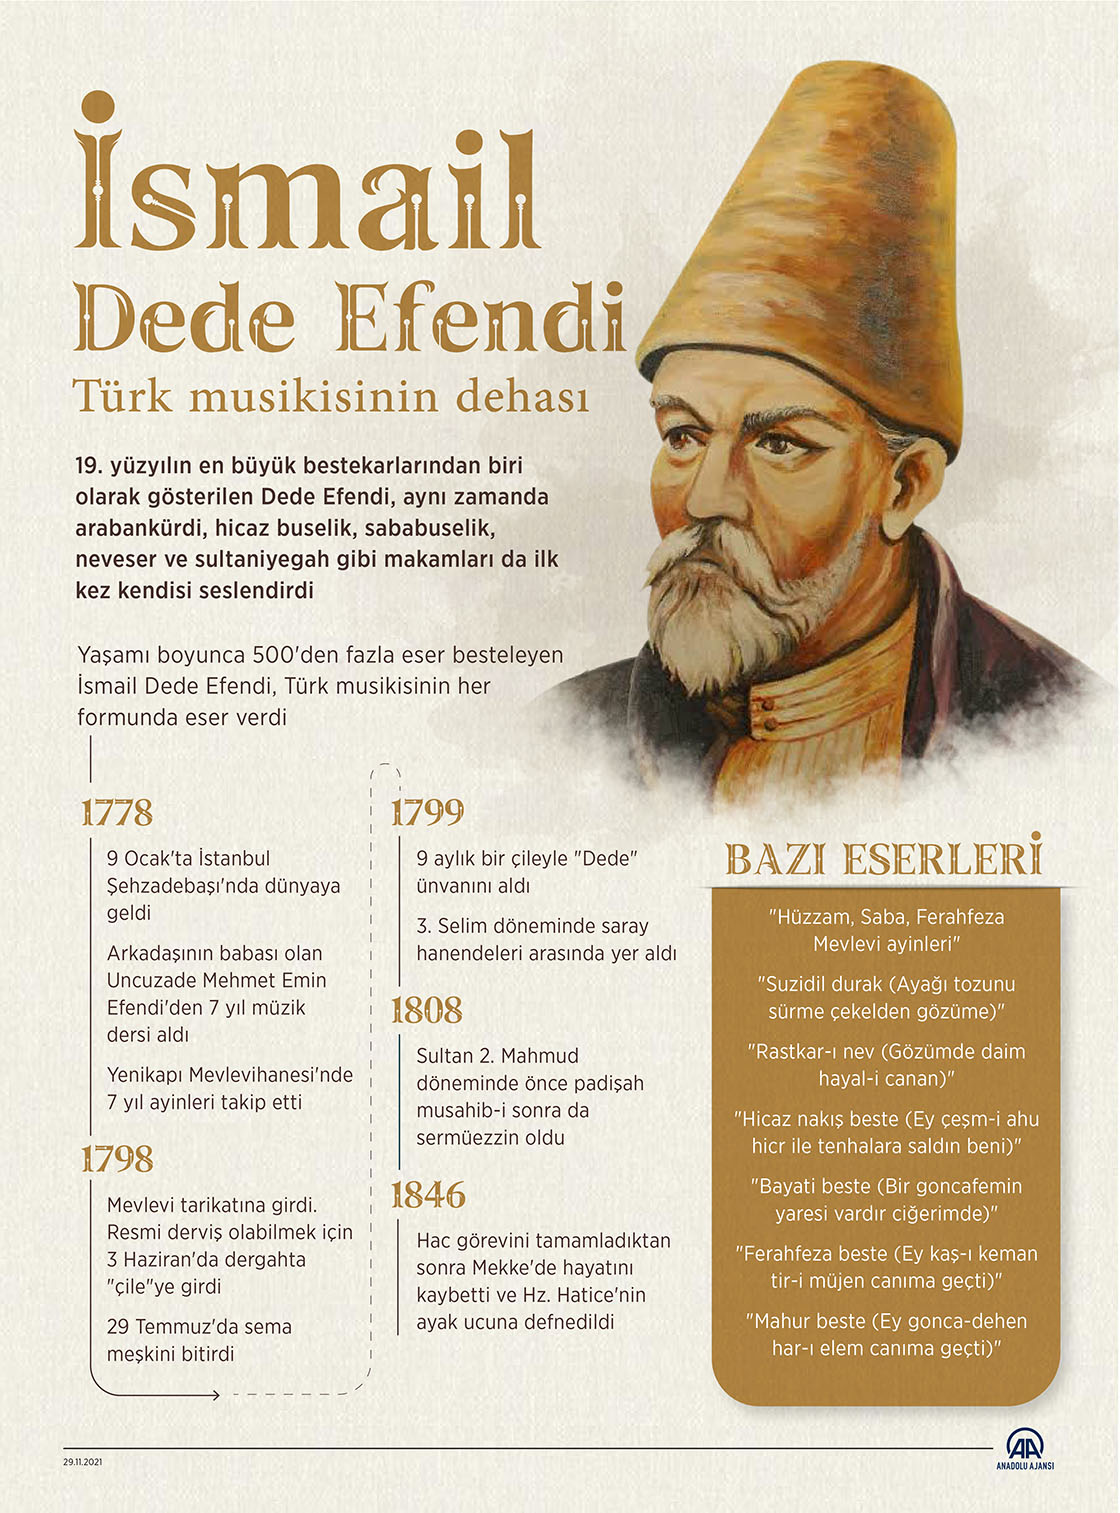 Türk musikisinin dehası: İsmail Dede Efendi